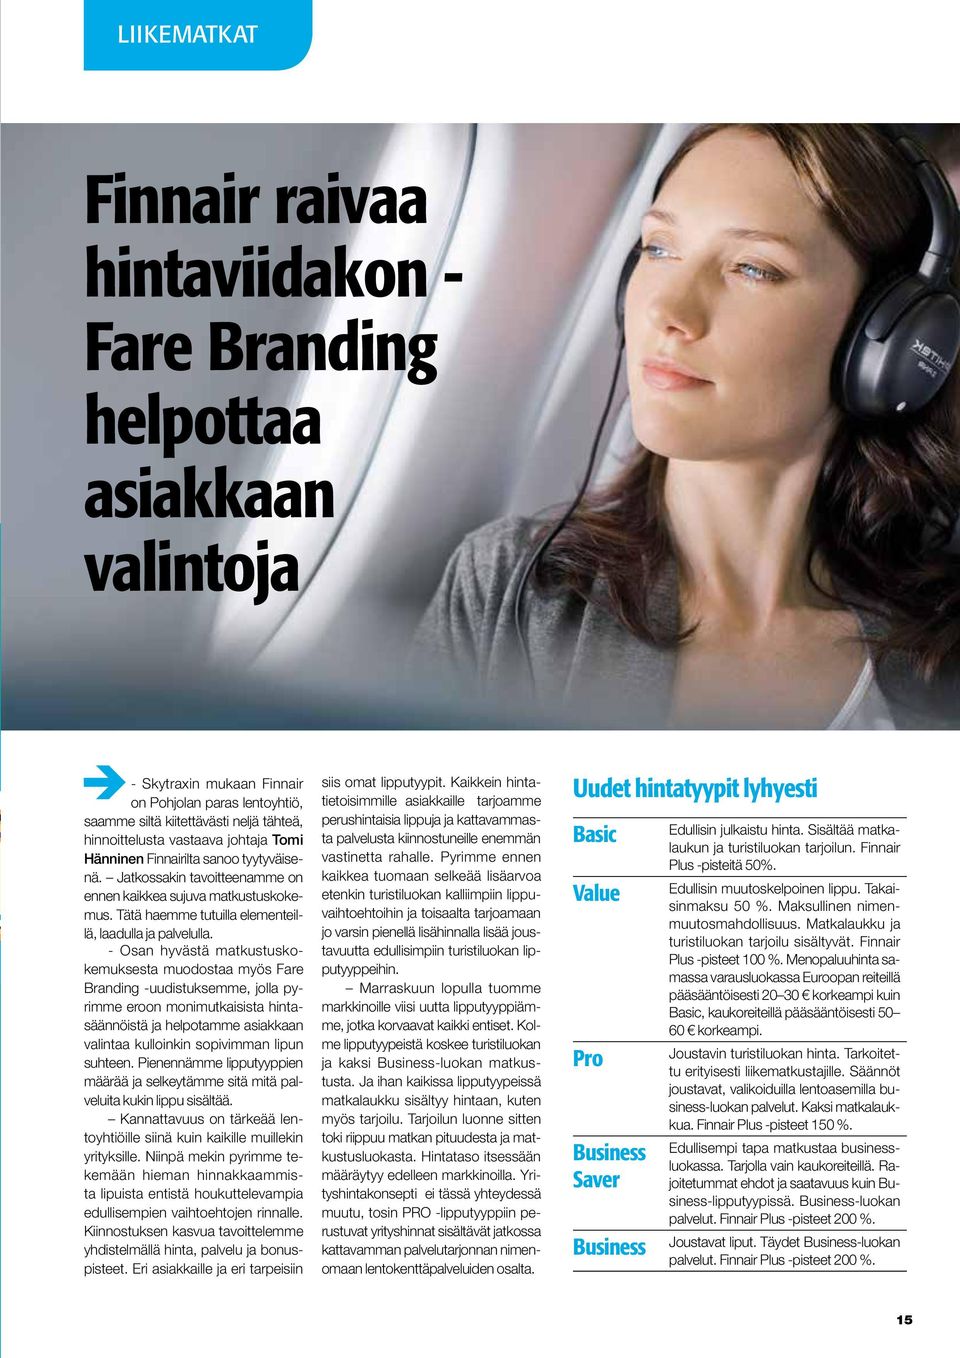 - Skytraxin mukaan Finnair on Pohjolan paras lentoyhtiö, saamme siltä kiitettävästi neljä tähteä, hinnoittelusta vastaava johtaja Tomi Hänninen Finnairilta sanoo tyytyväisenä.